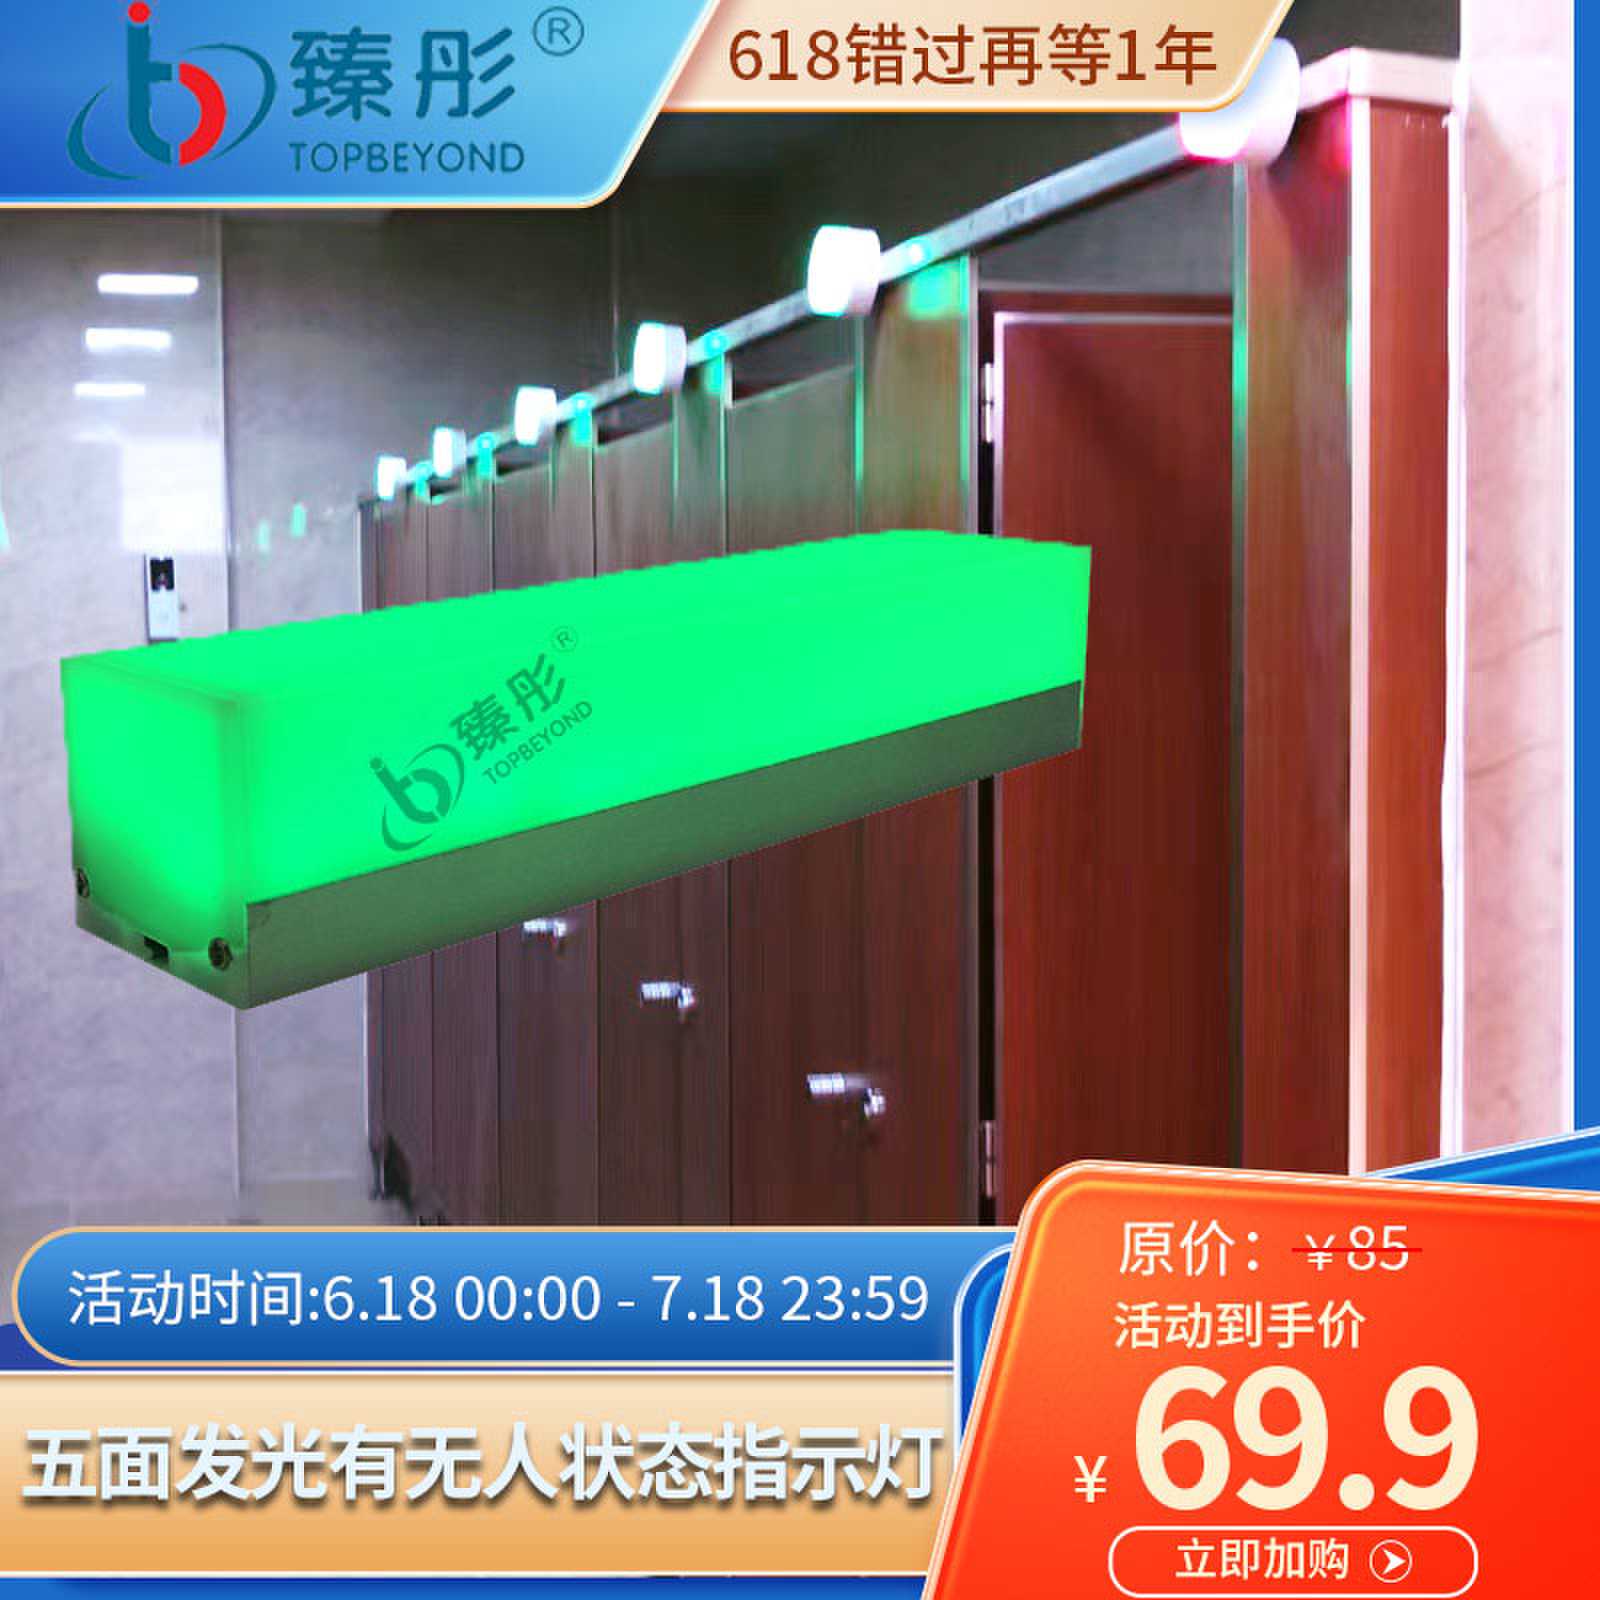 智慧公厕指示灯五面发光红绿双色显示挂壁安装定制有人无人厕所灯图片